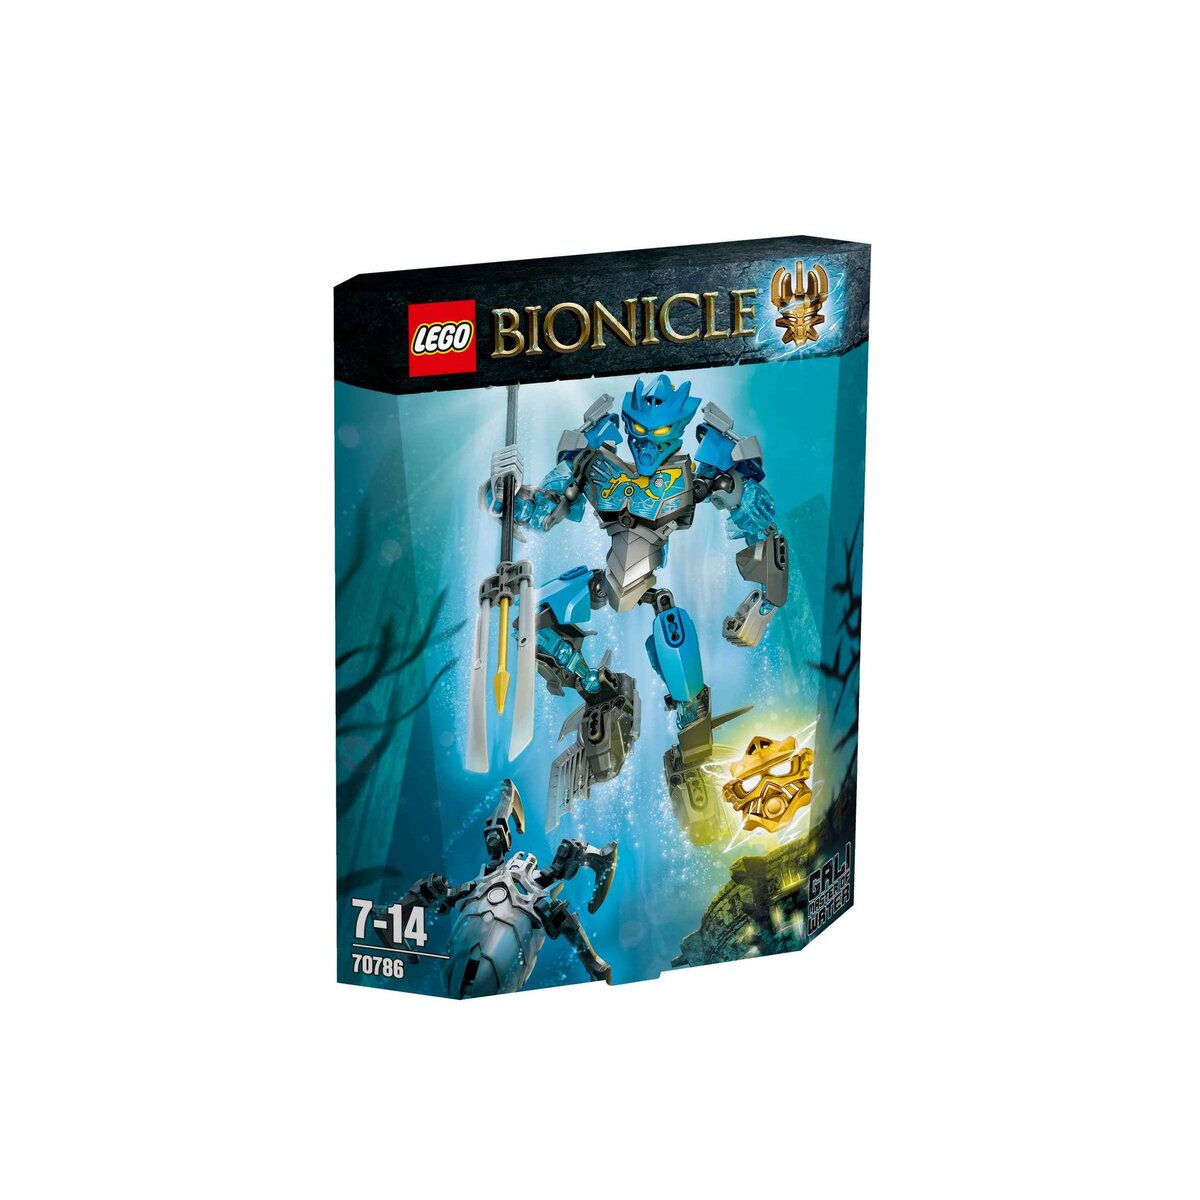 LEGO Bionicle 70786